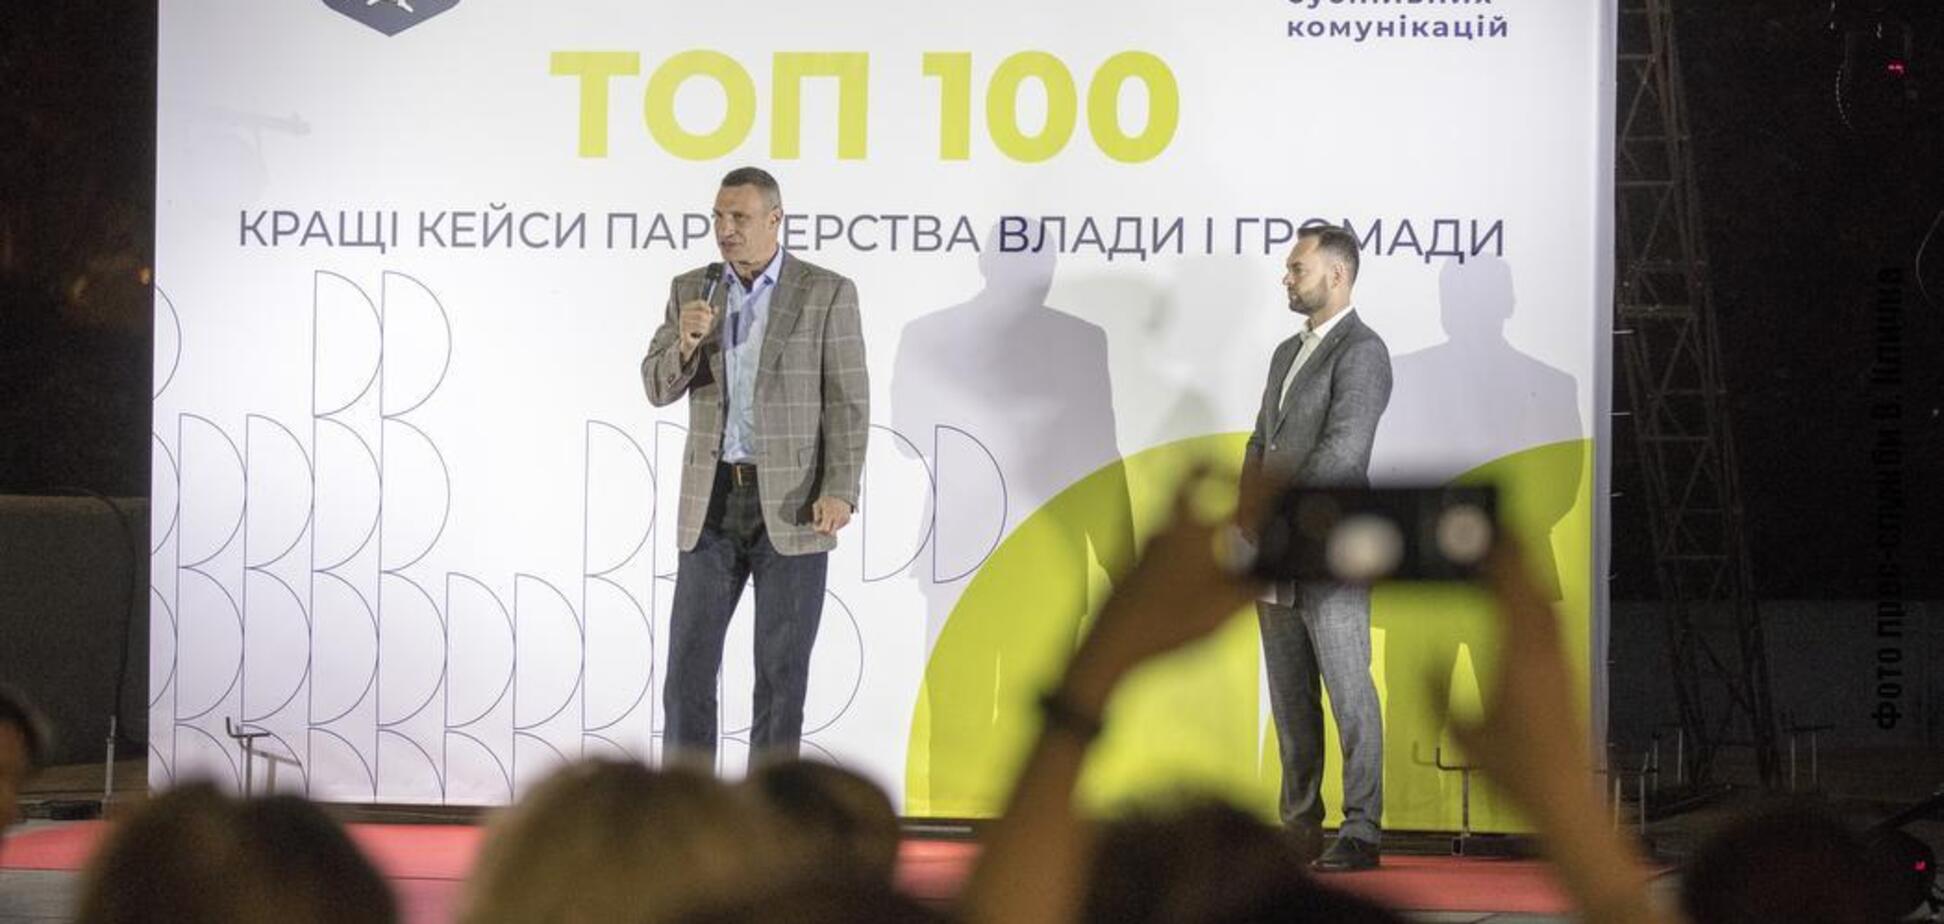 Кличко наградил общественные организации, которые реализовали полезные для киевлян инициативы